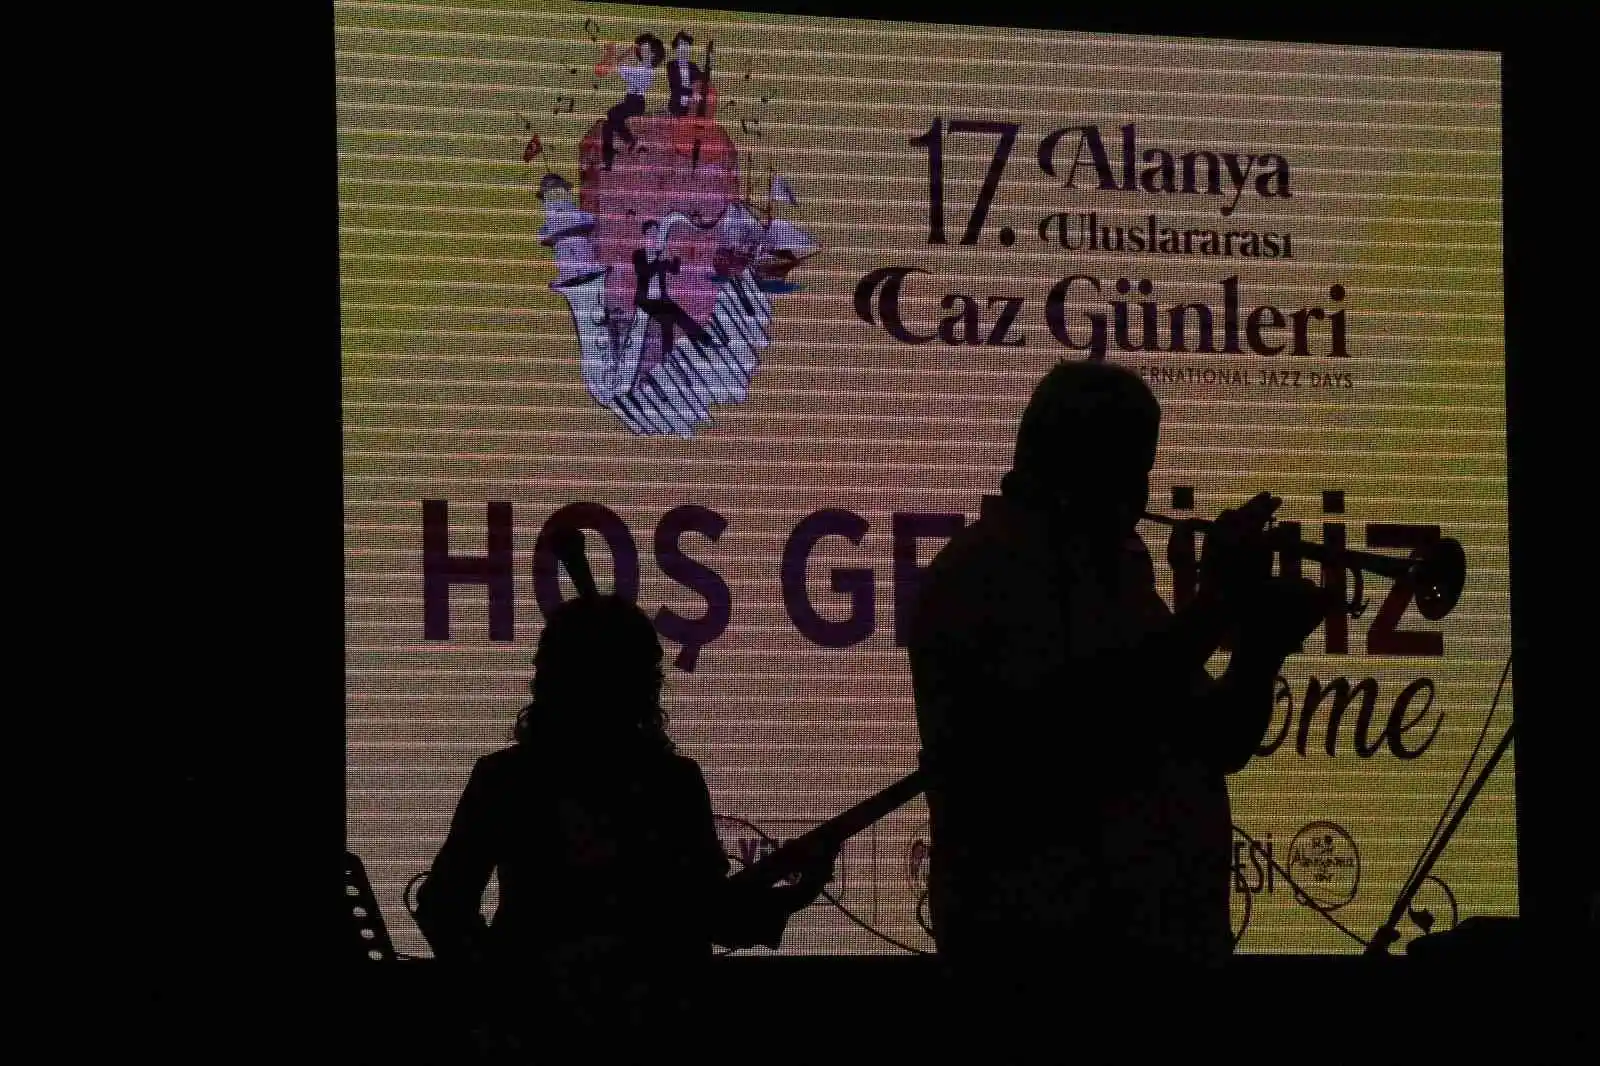 Uluslararası Caz Festivali 17. yaşını kutladı
